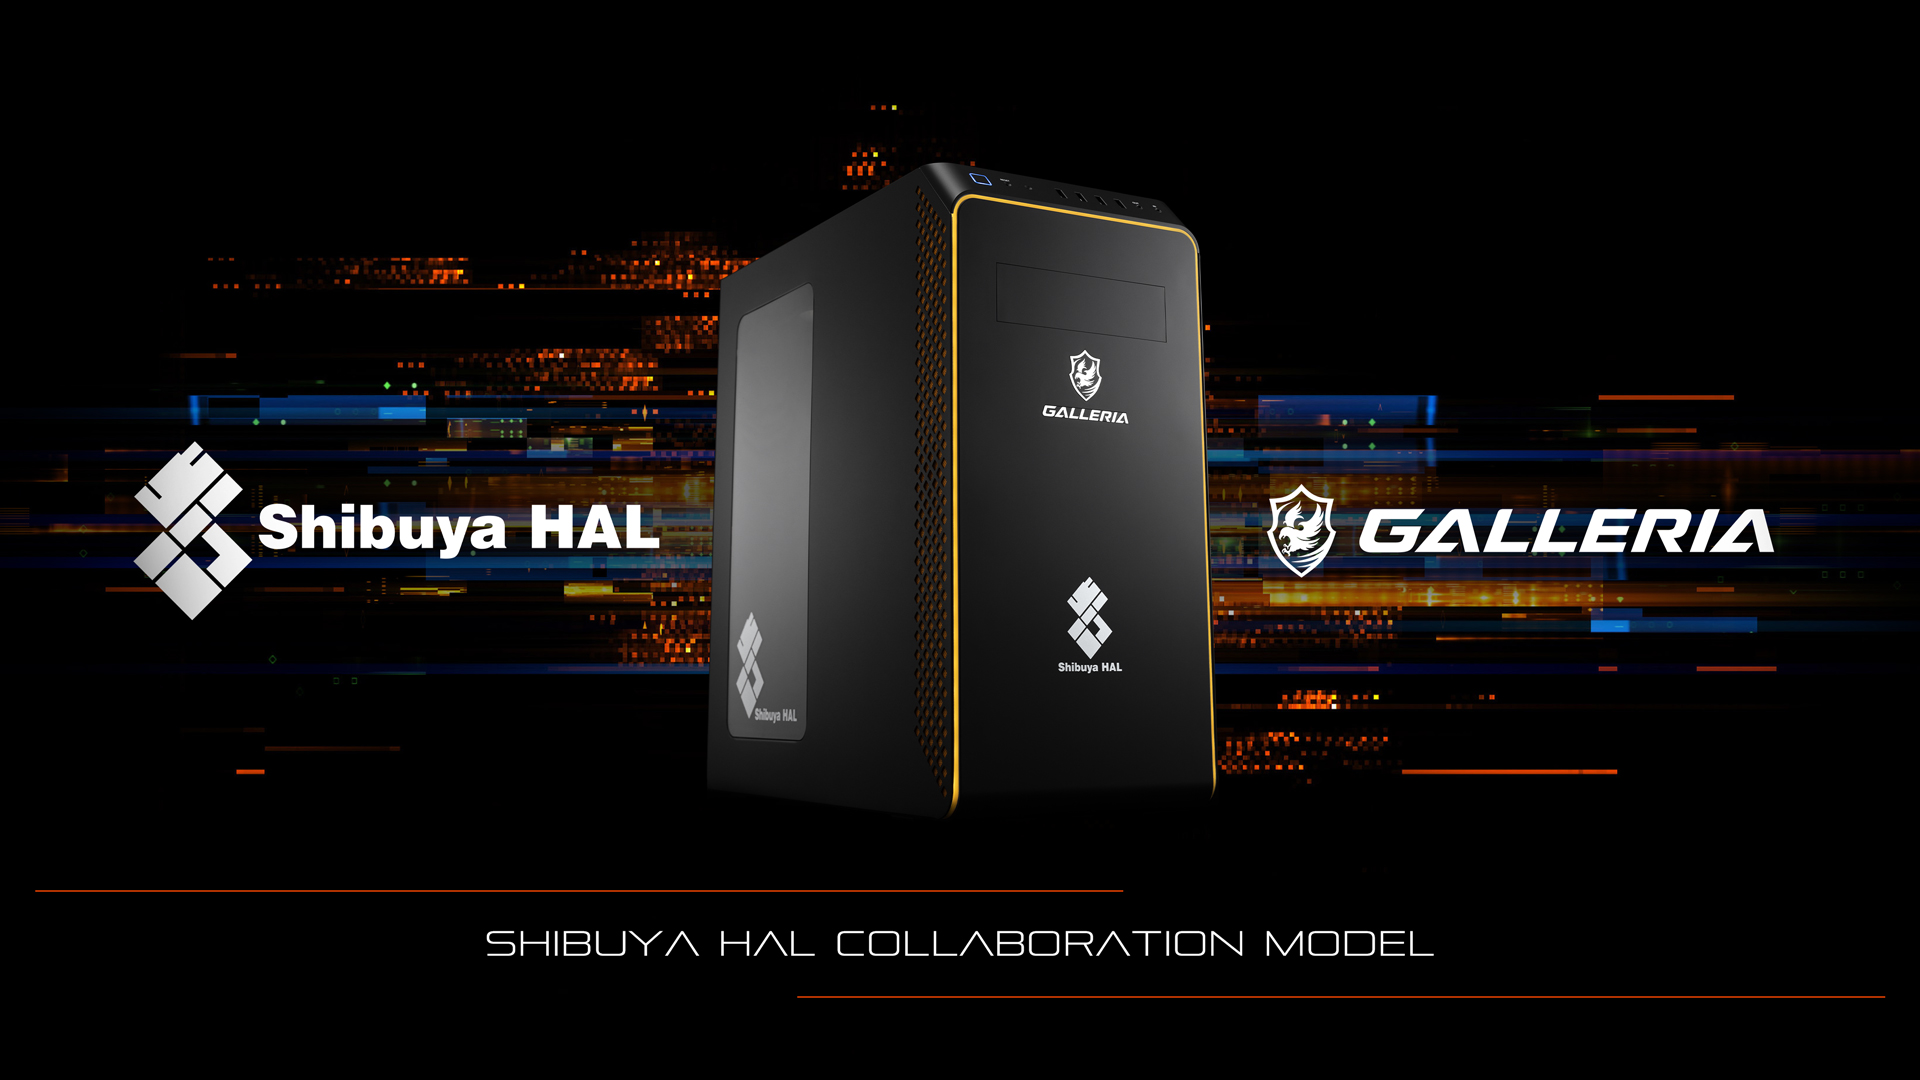 ゲーミングpc GALLERIA SHA5C-G60S 渋谷ハルモデル